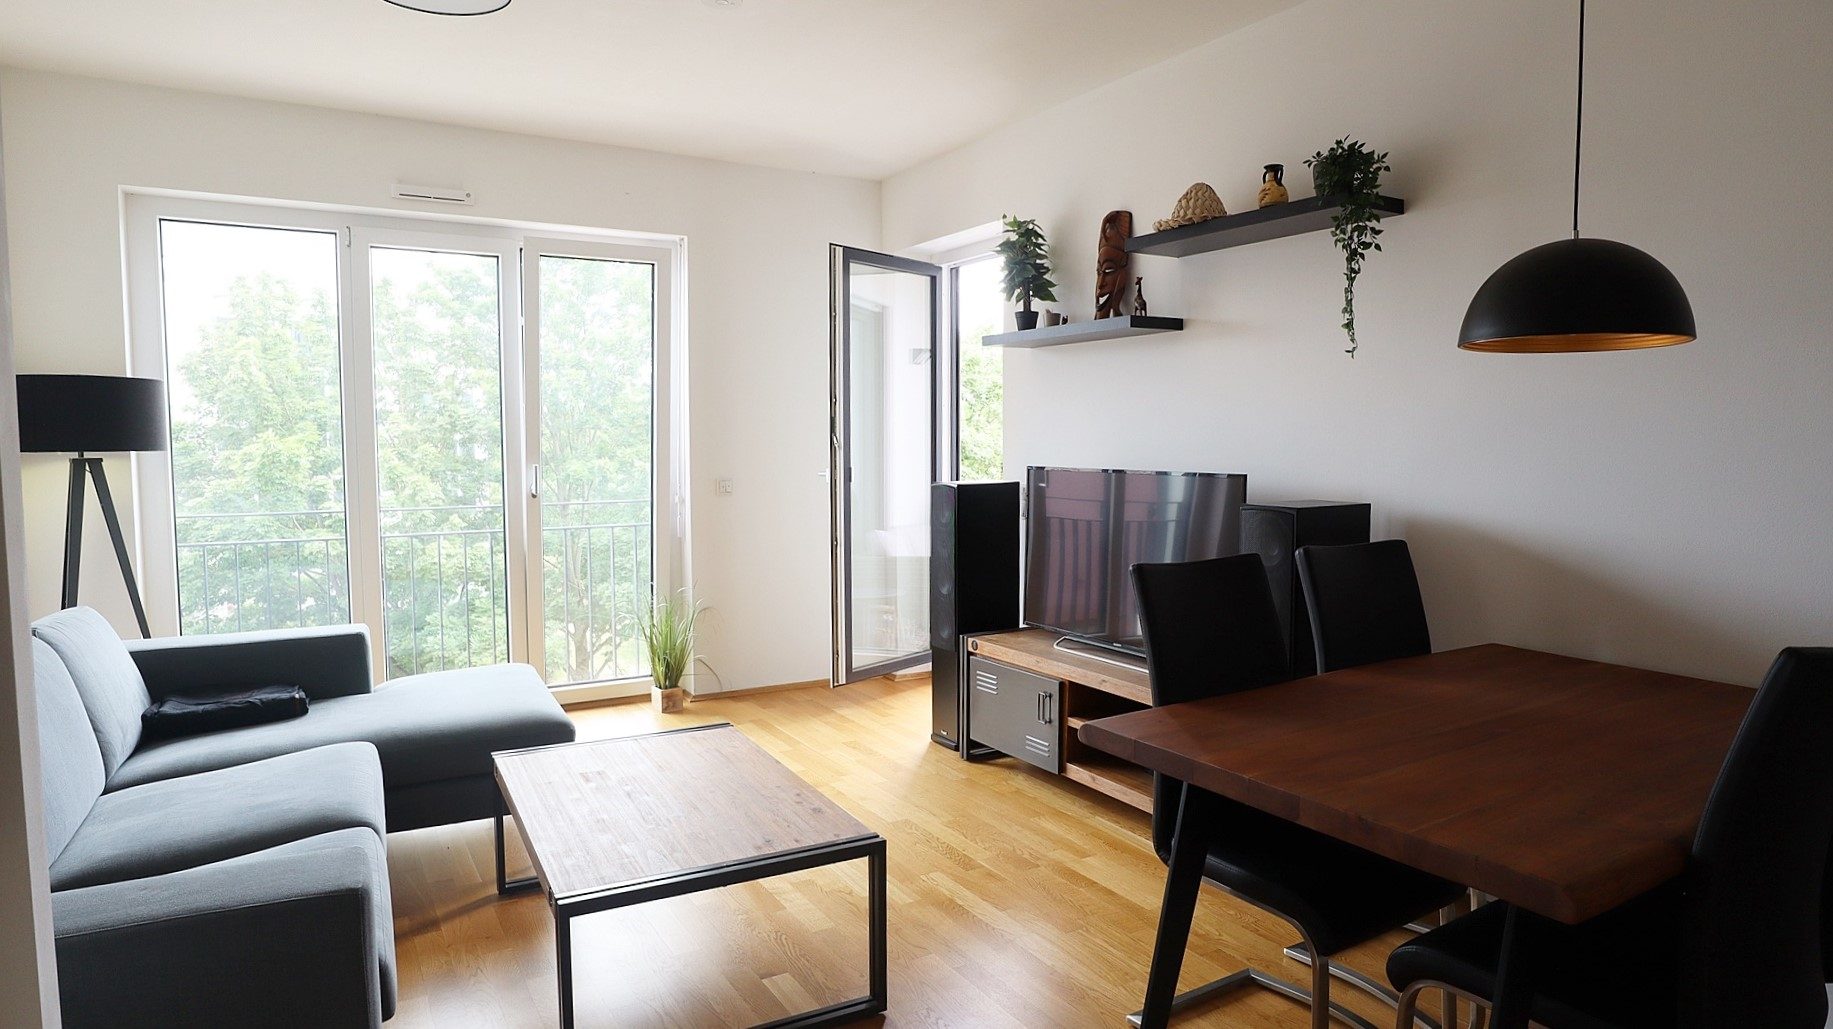 Böcker Wohnimmobilien - Immobilienangebot - Düsseldorf - Alle - Attraktive 2-Zimmer-Wohnung mit moderner Ausstattung, Balkon und hochwertiger Einbauküche